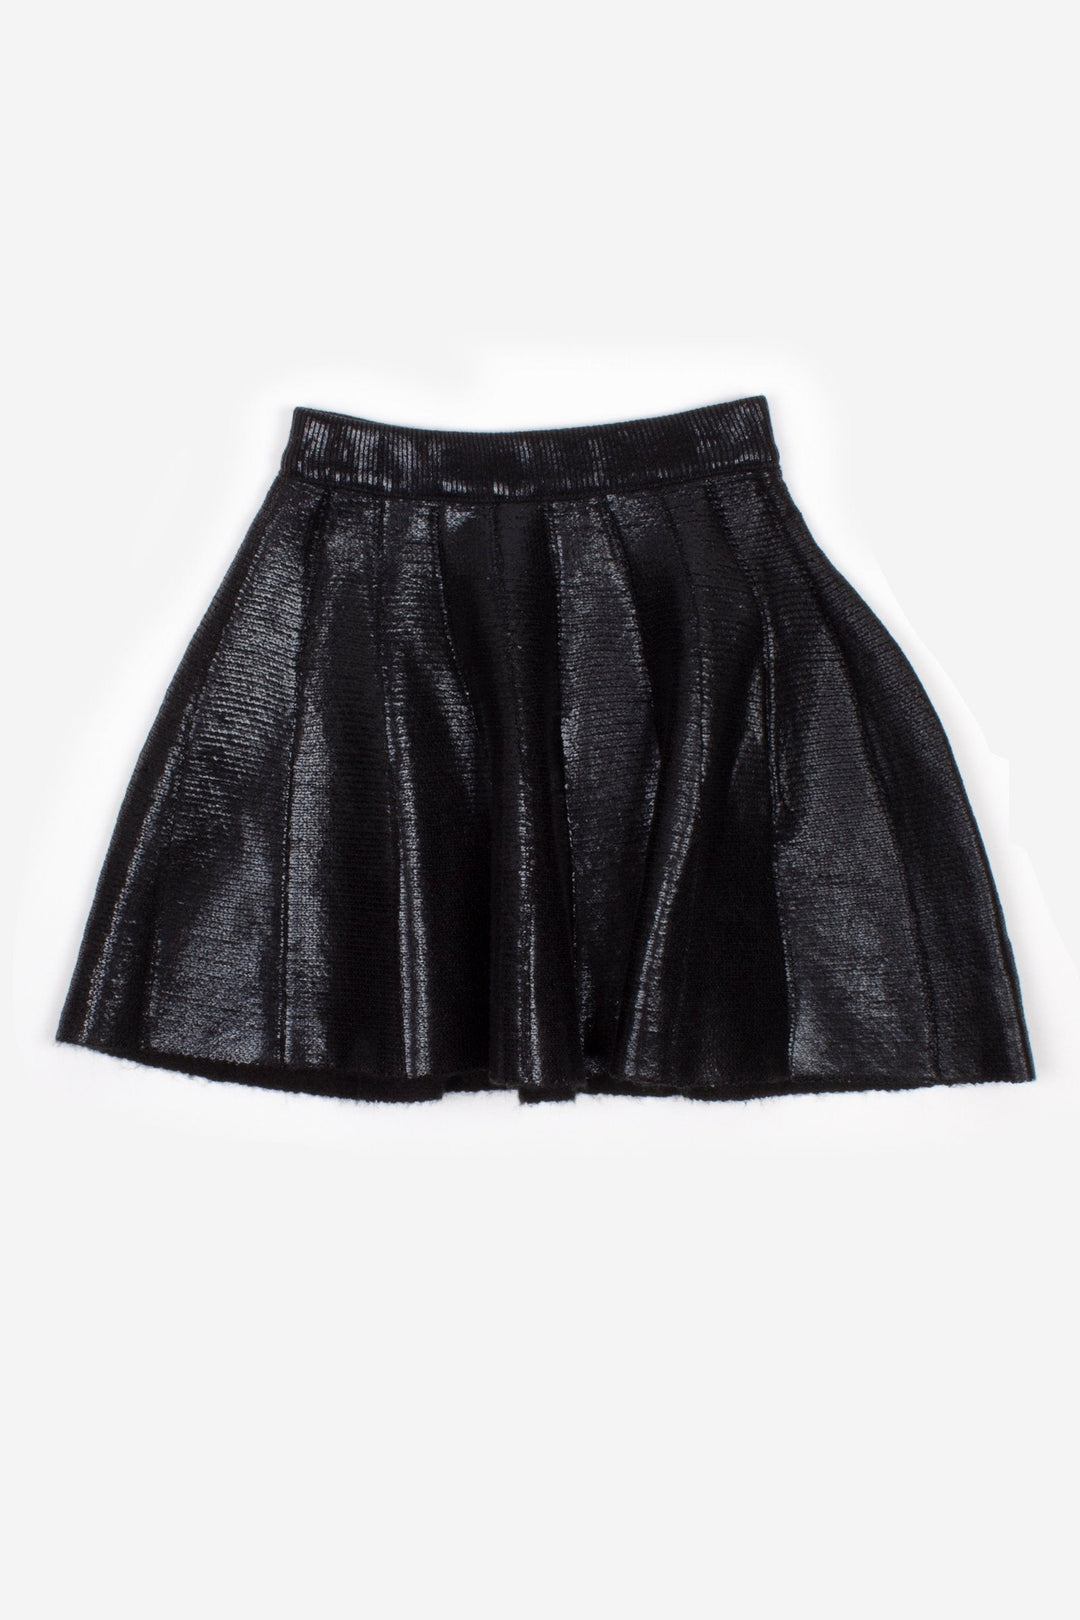 Girls Black Metallic Knit Skirt